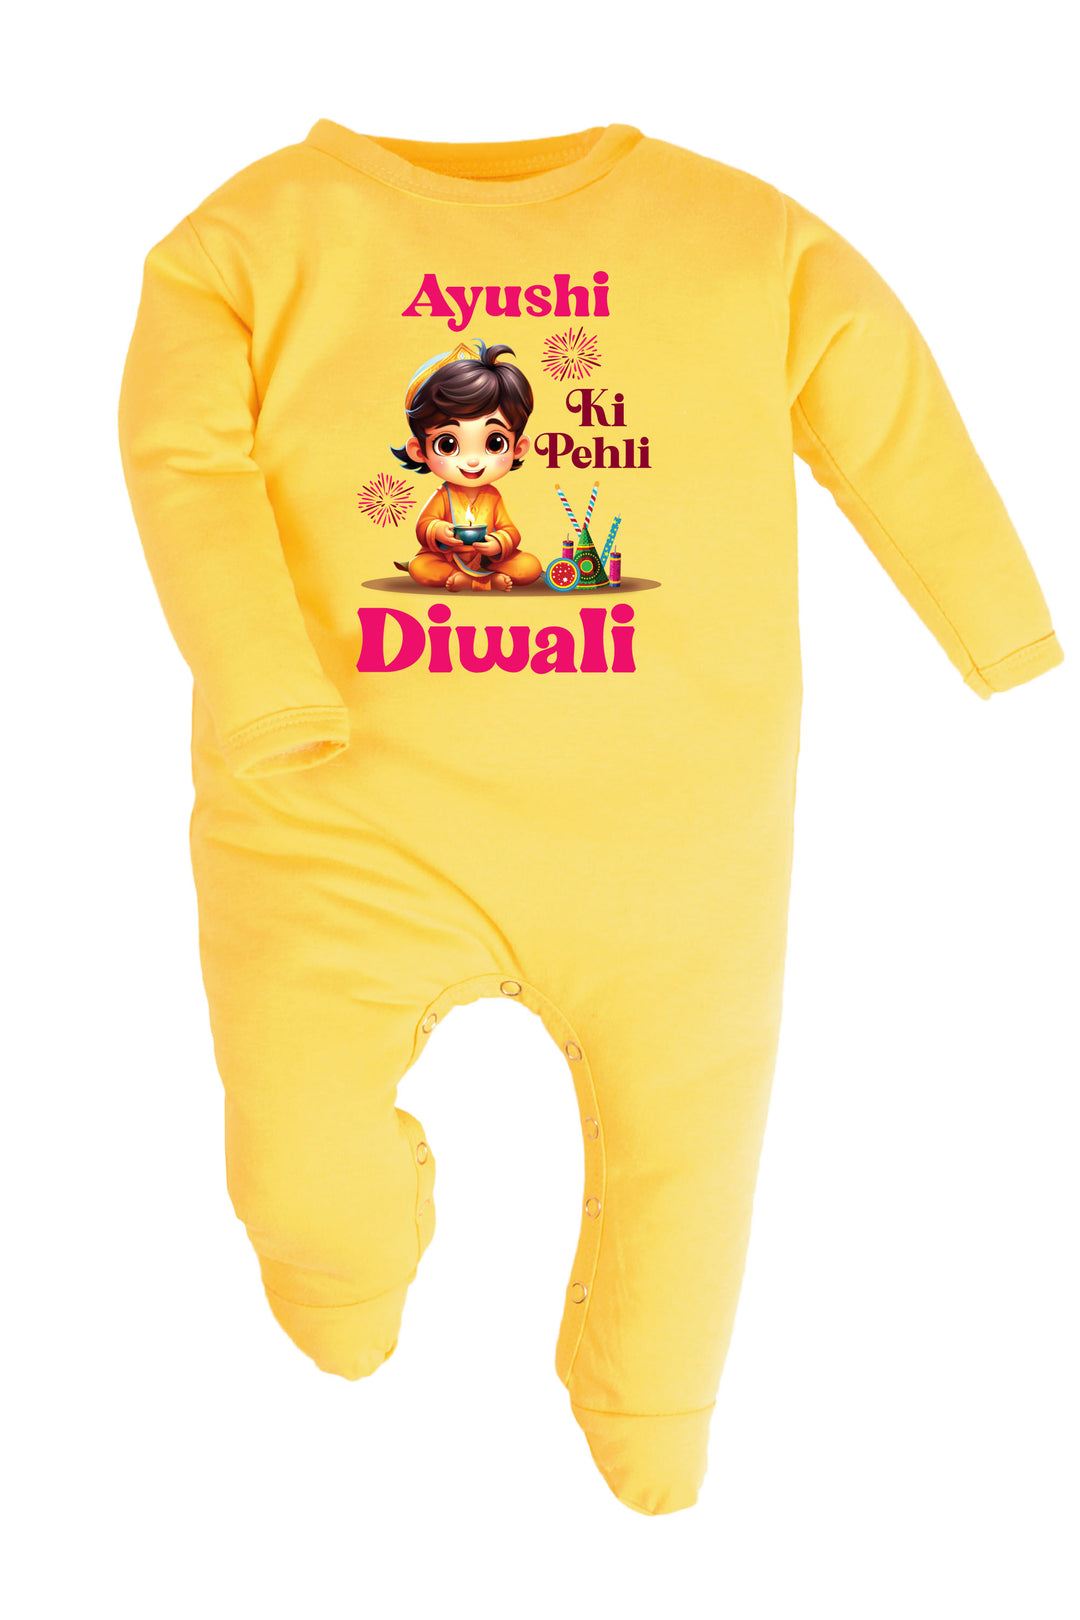 Meri Pehli Diwali Baby Romper | Onesies w/ Custom Name